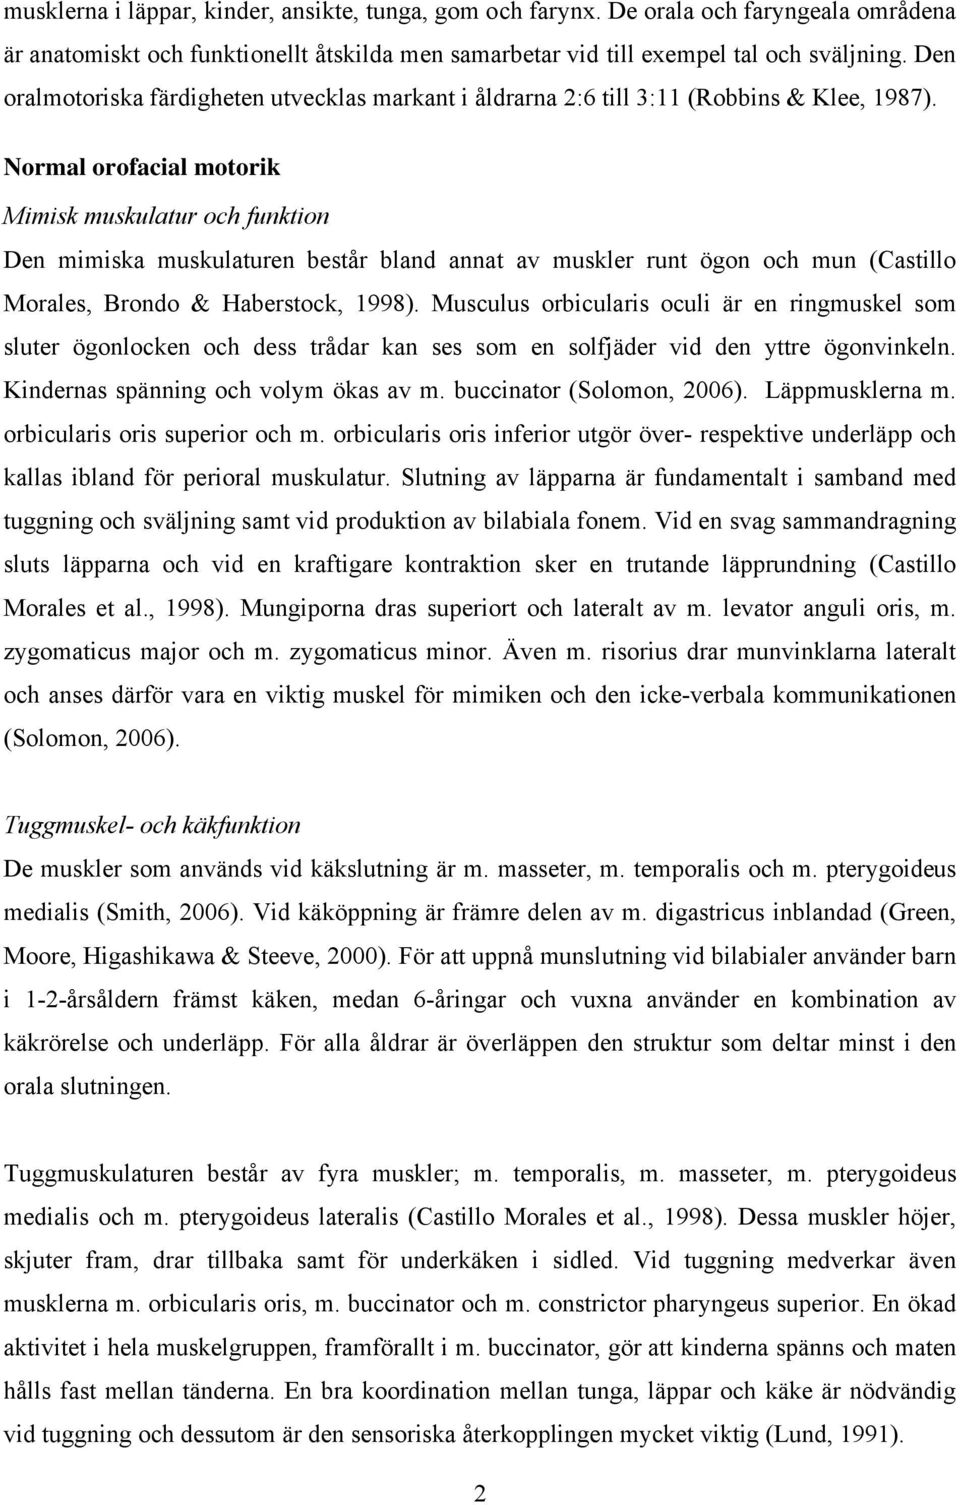 Normal orofacial motorik Mimisk muskulatur och funktion Den mimiska muskulaturen består bland annat av muskler runt ögon och mun (Castillo Morales, Brondo & Haberstock, 1998).